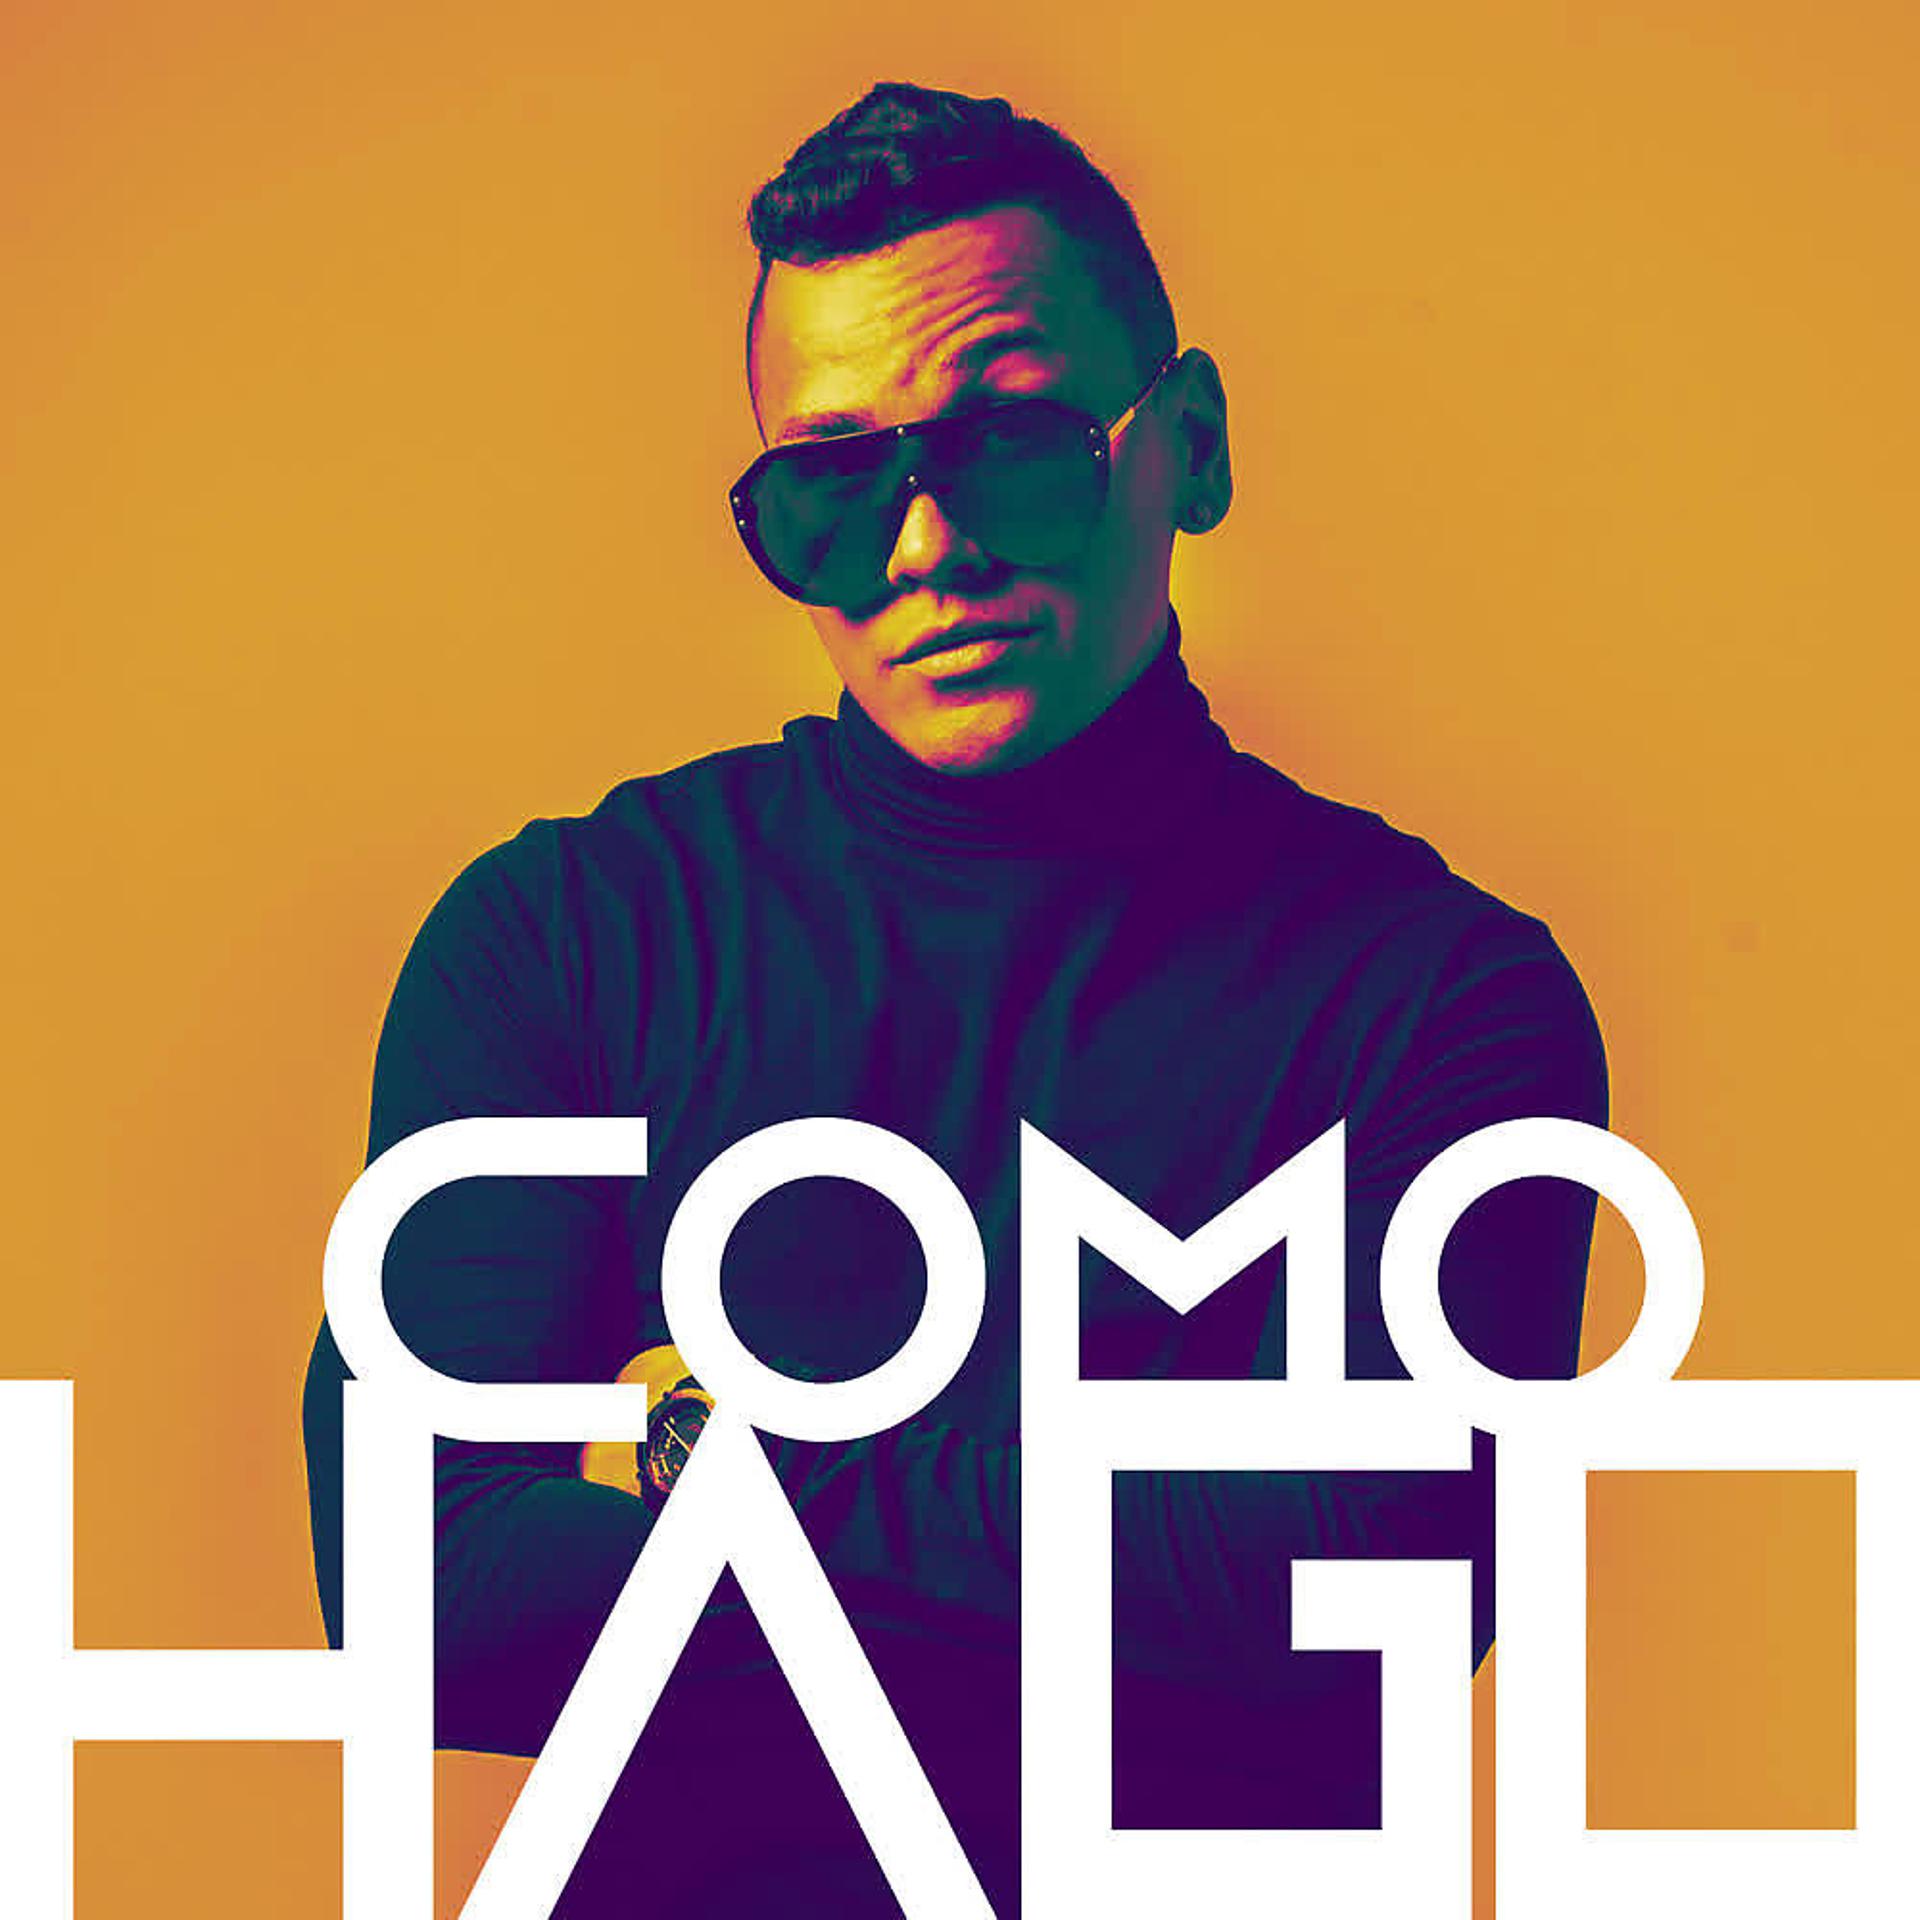 Постер альбома Como Hago